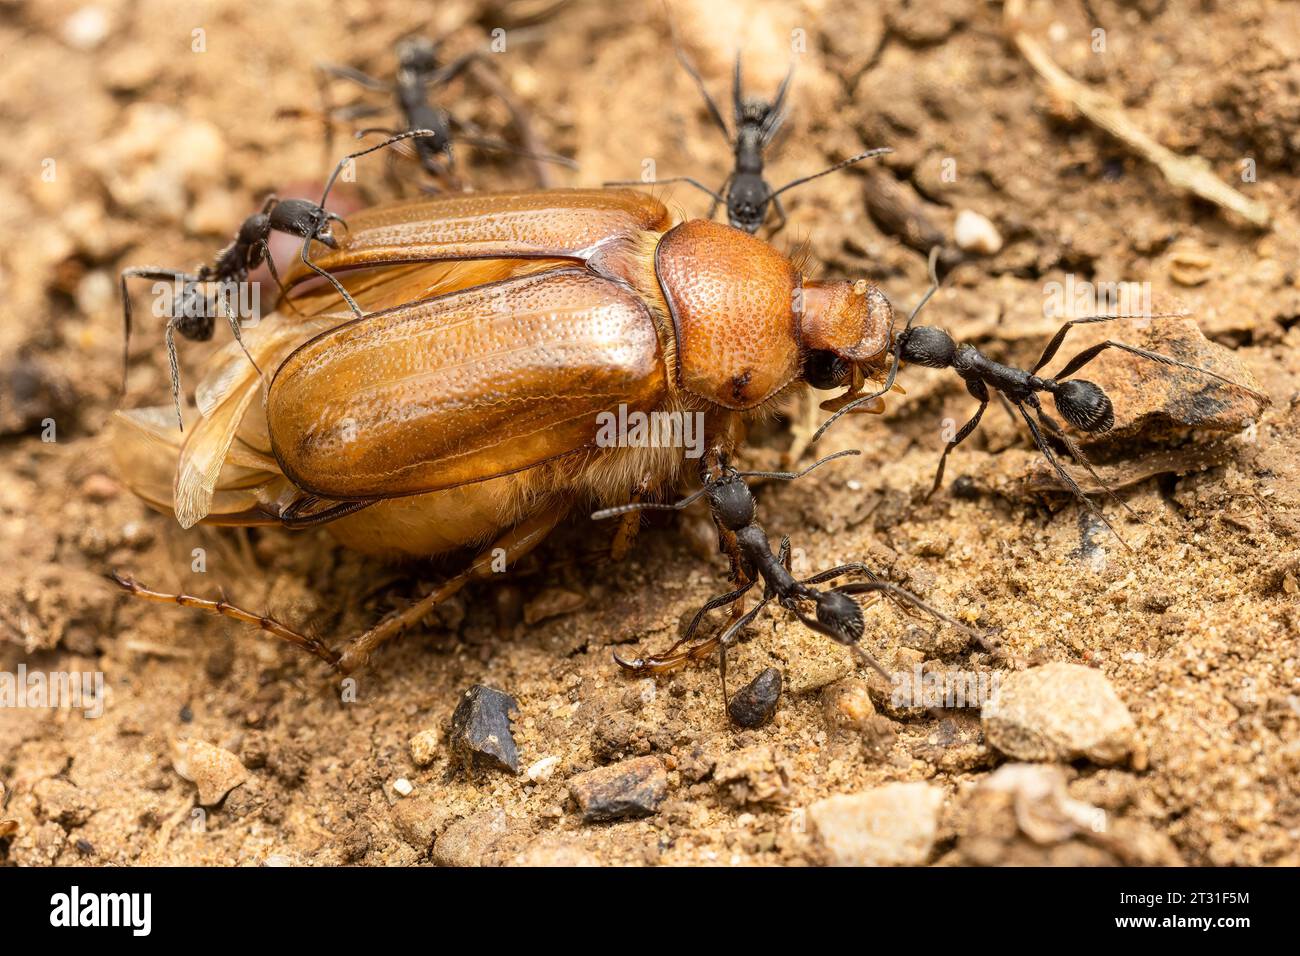 Une équipe de fourmis transportant la carcasse d'un scarabée vers leur nid pour consommation, Espagne. Banque D'Images